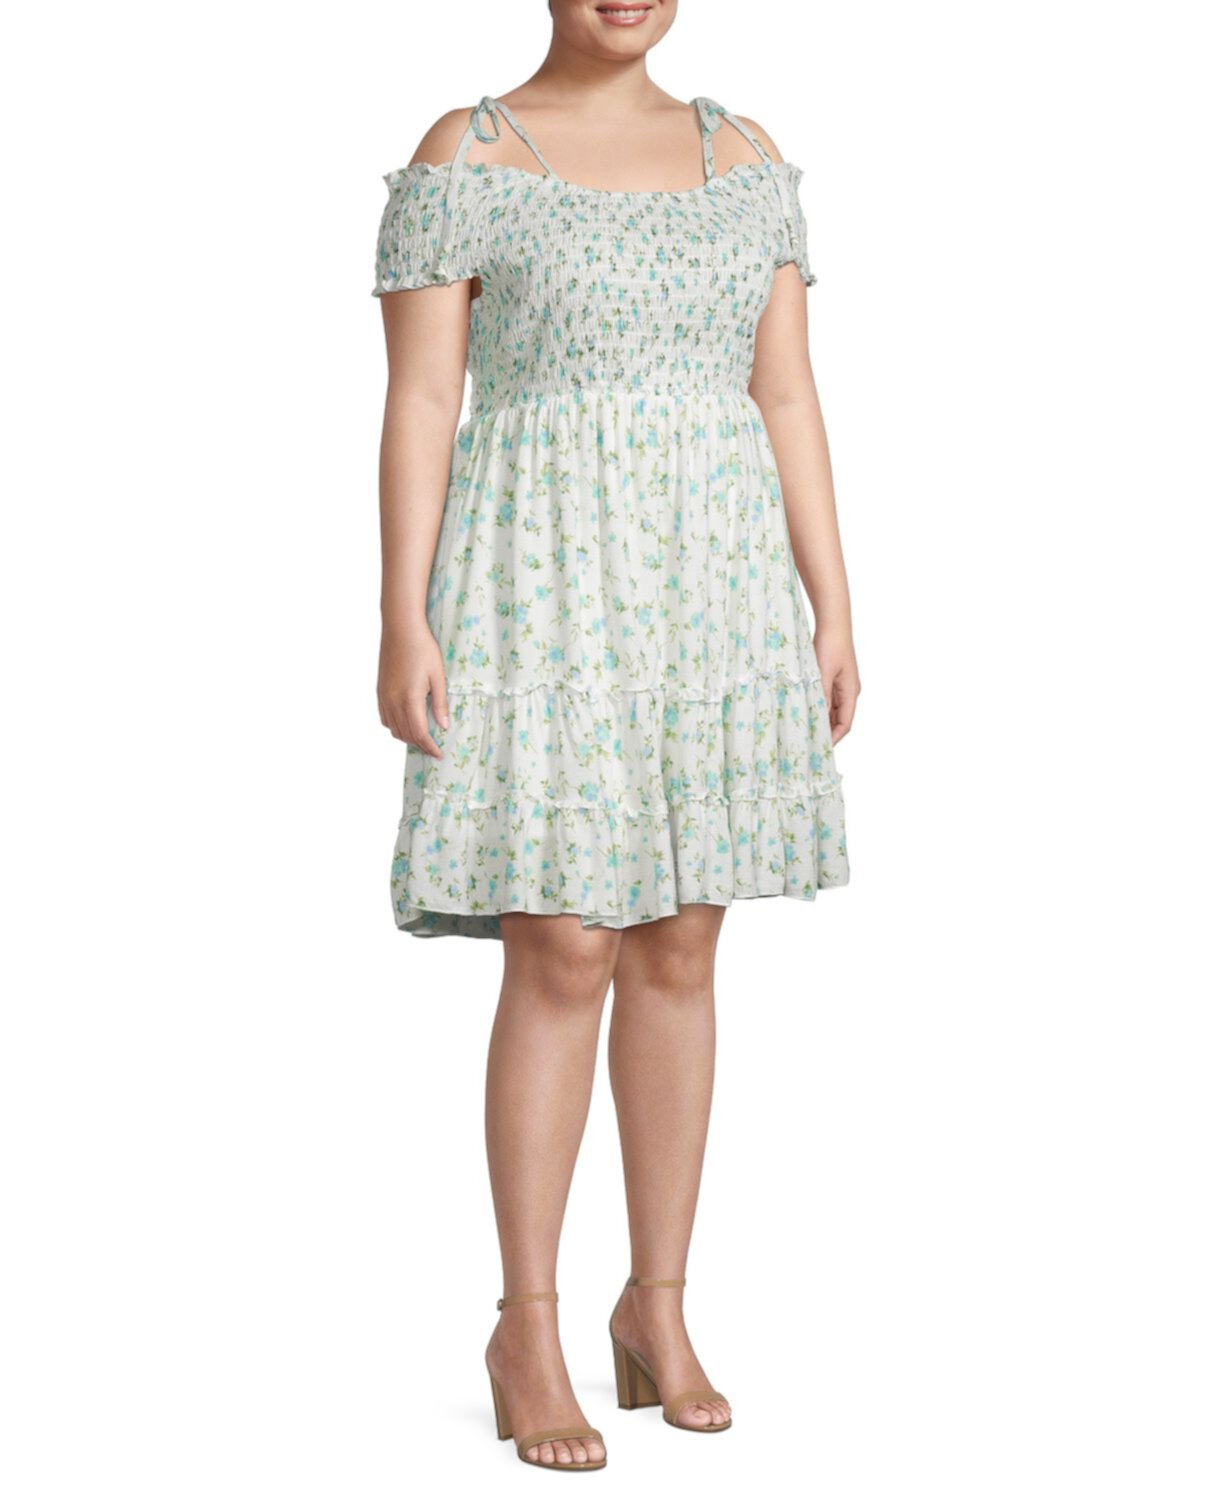 Присборенное платье Plus с цветочным принтом Mary & Mo